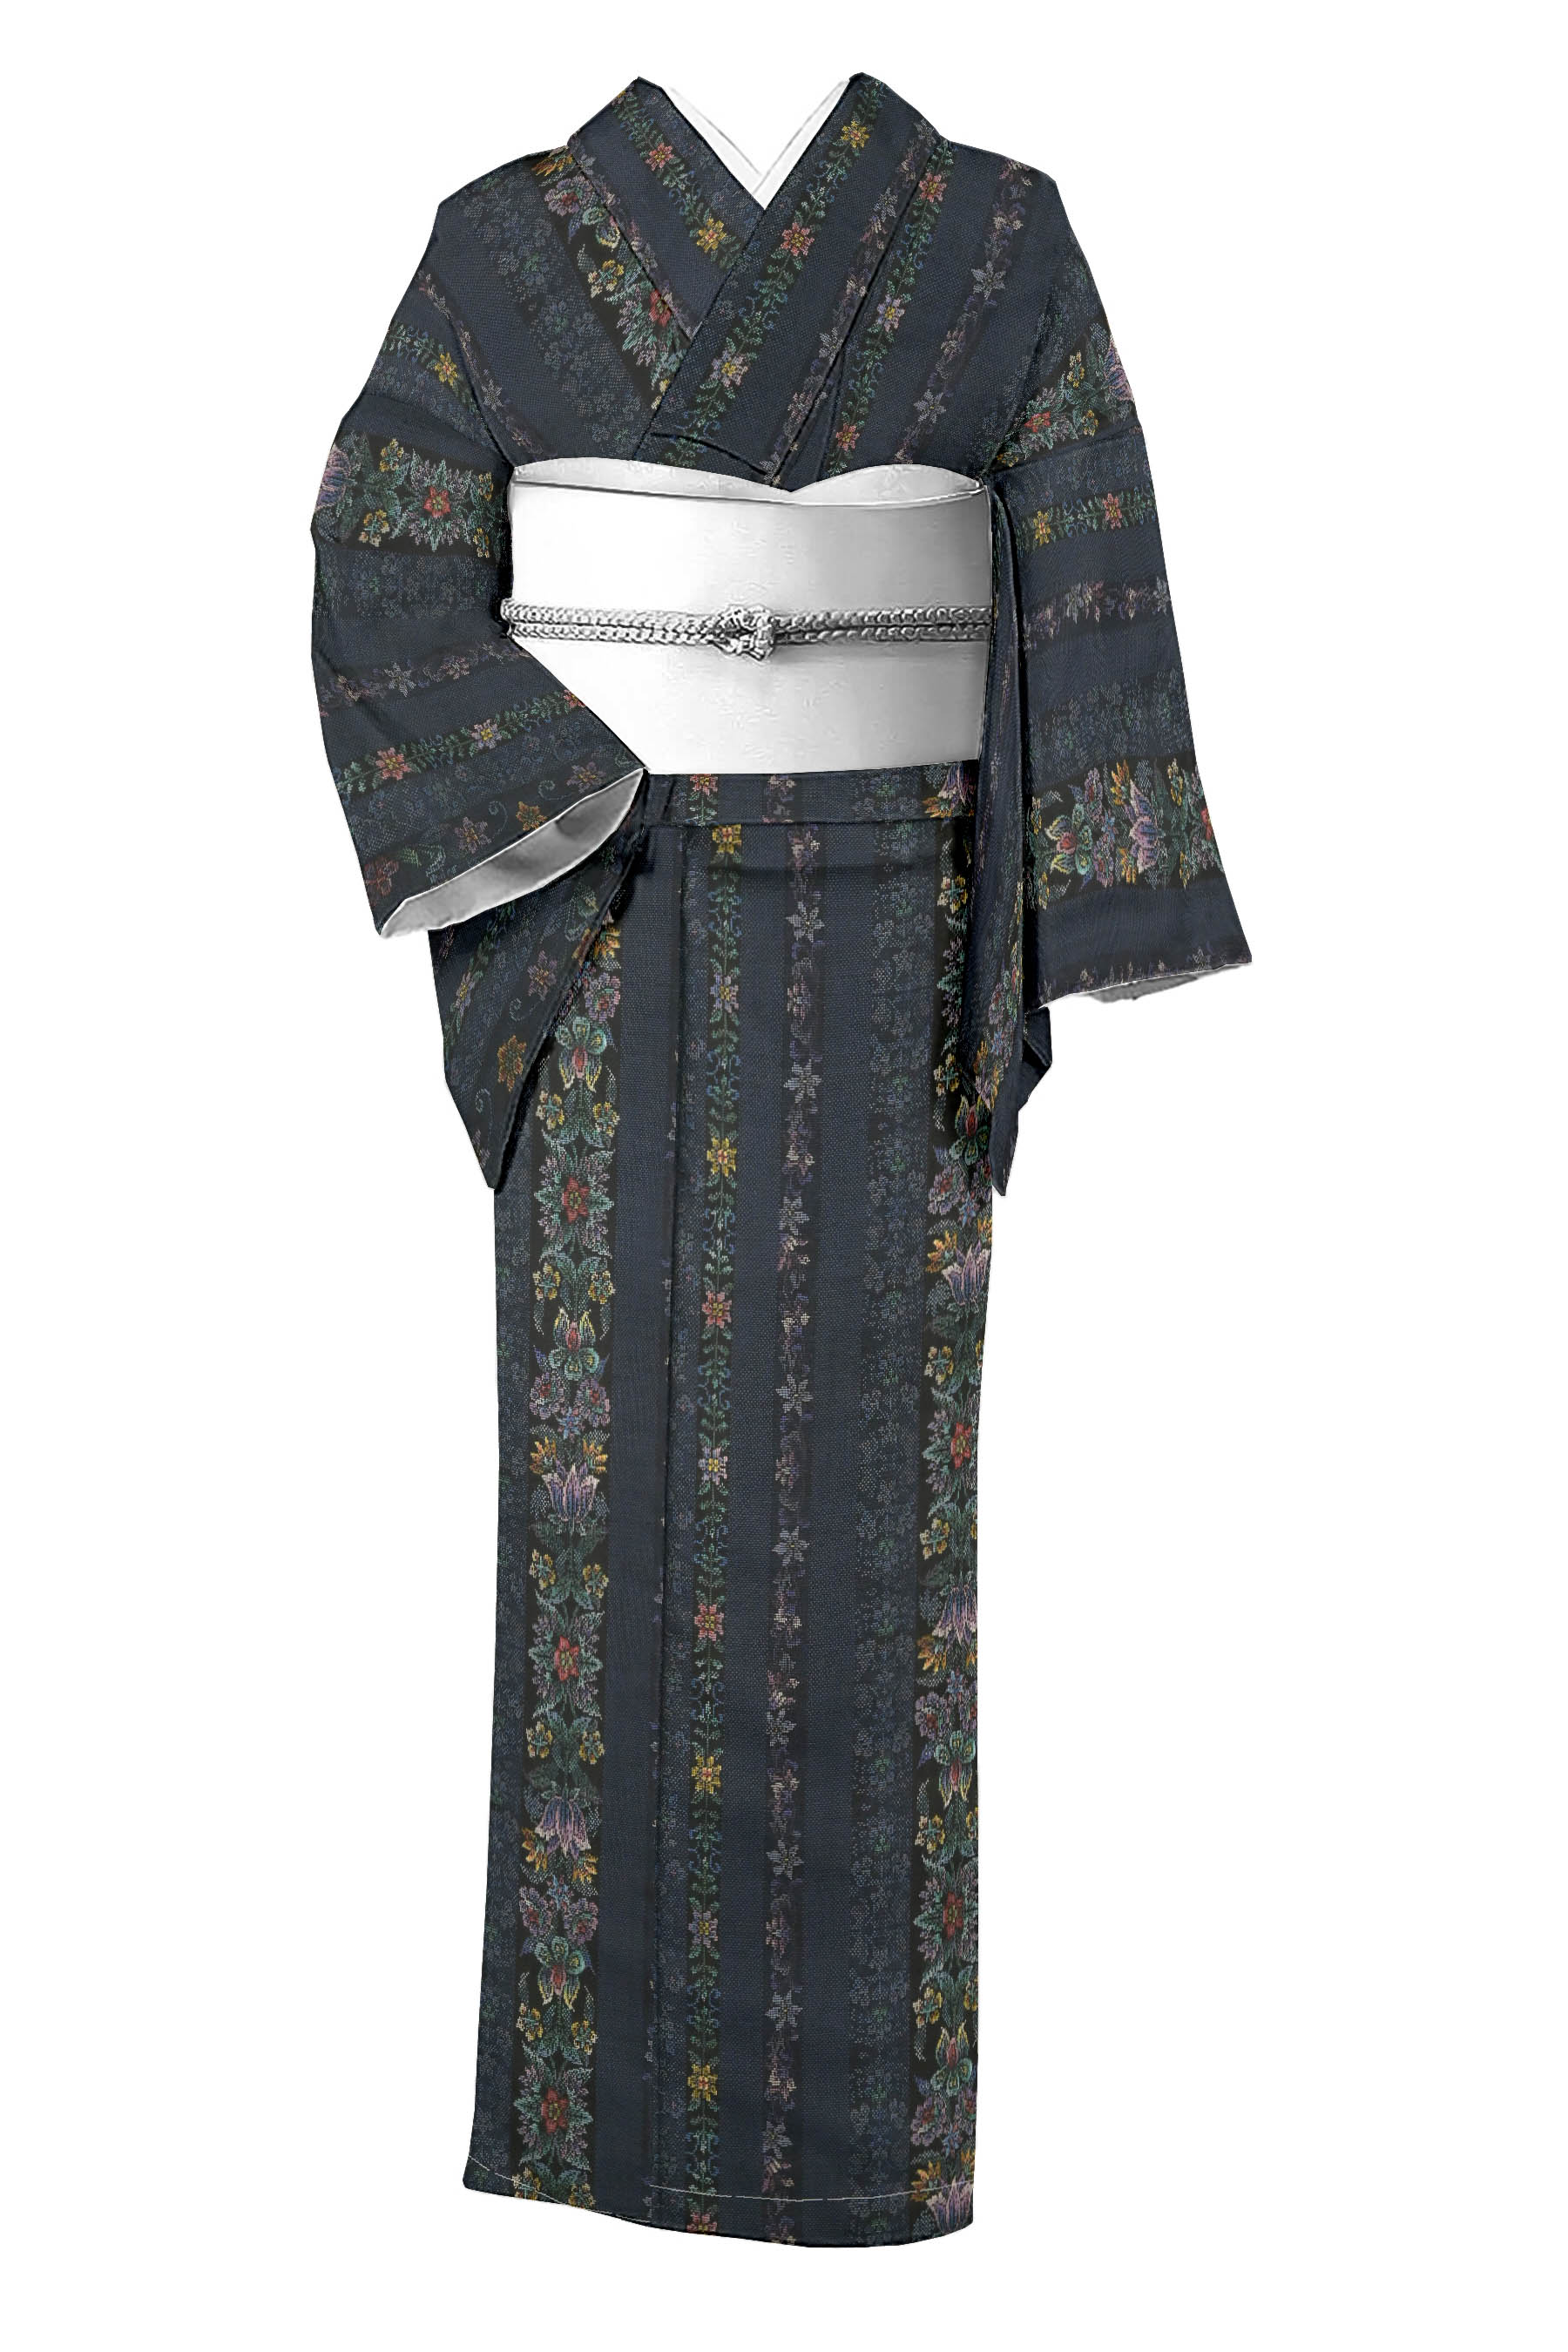 都喜ヱ門の着物・帯の一覧|京都きもの市場【日本最大級の着物通販サイト】